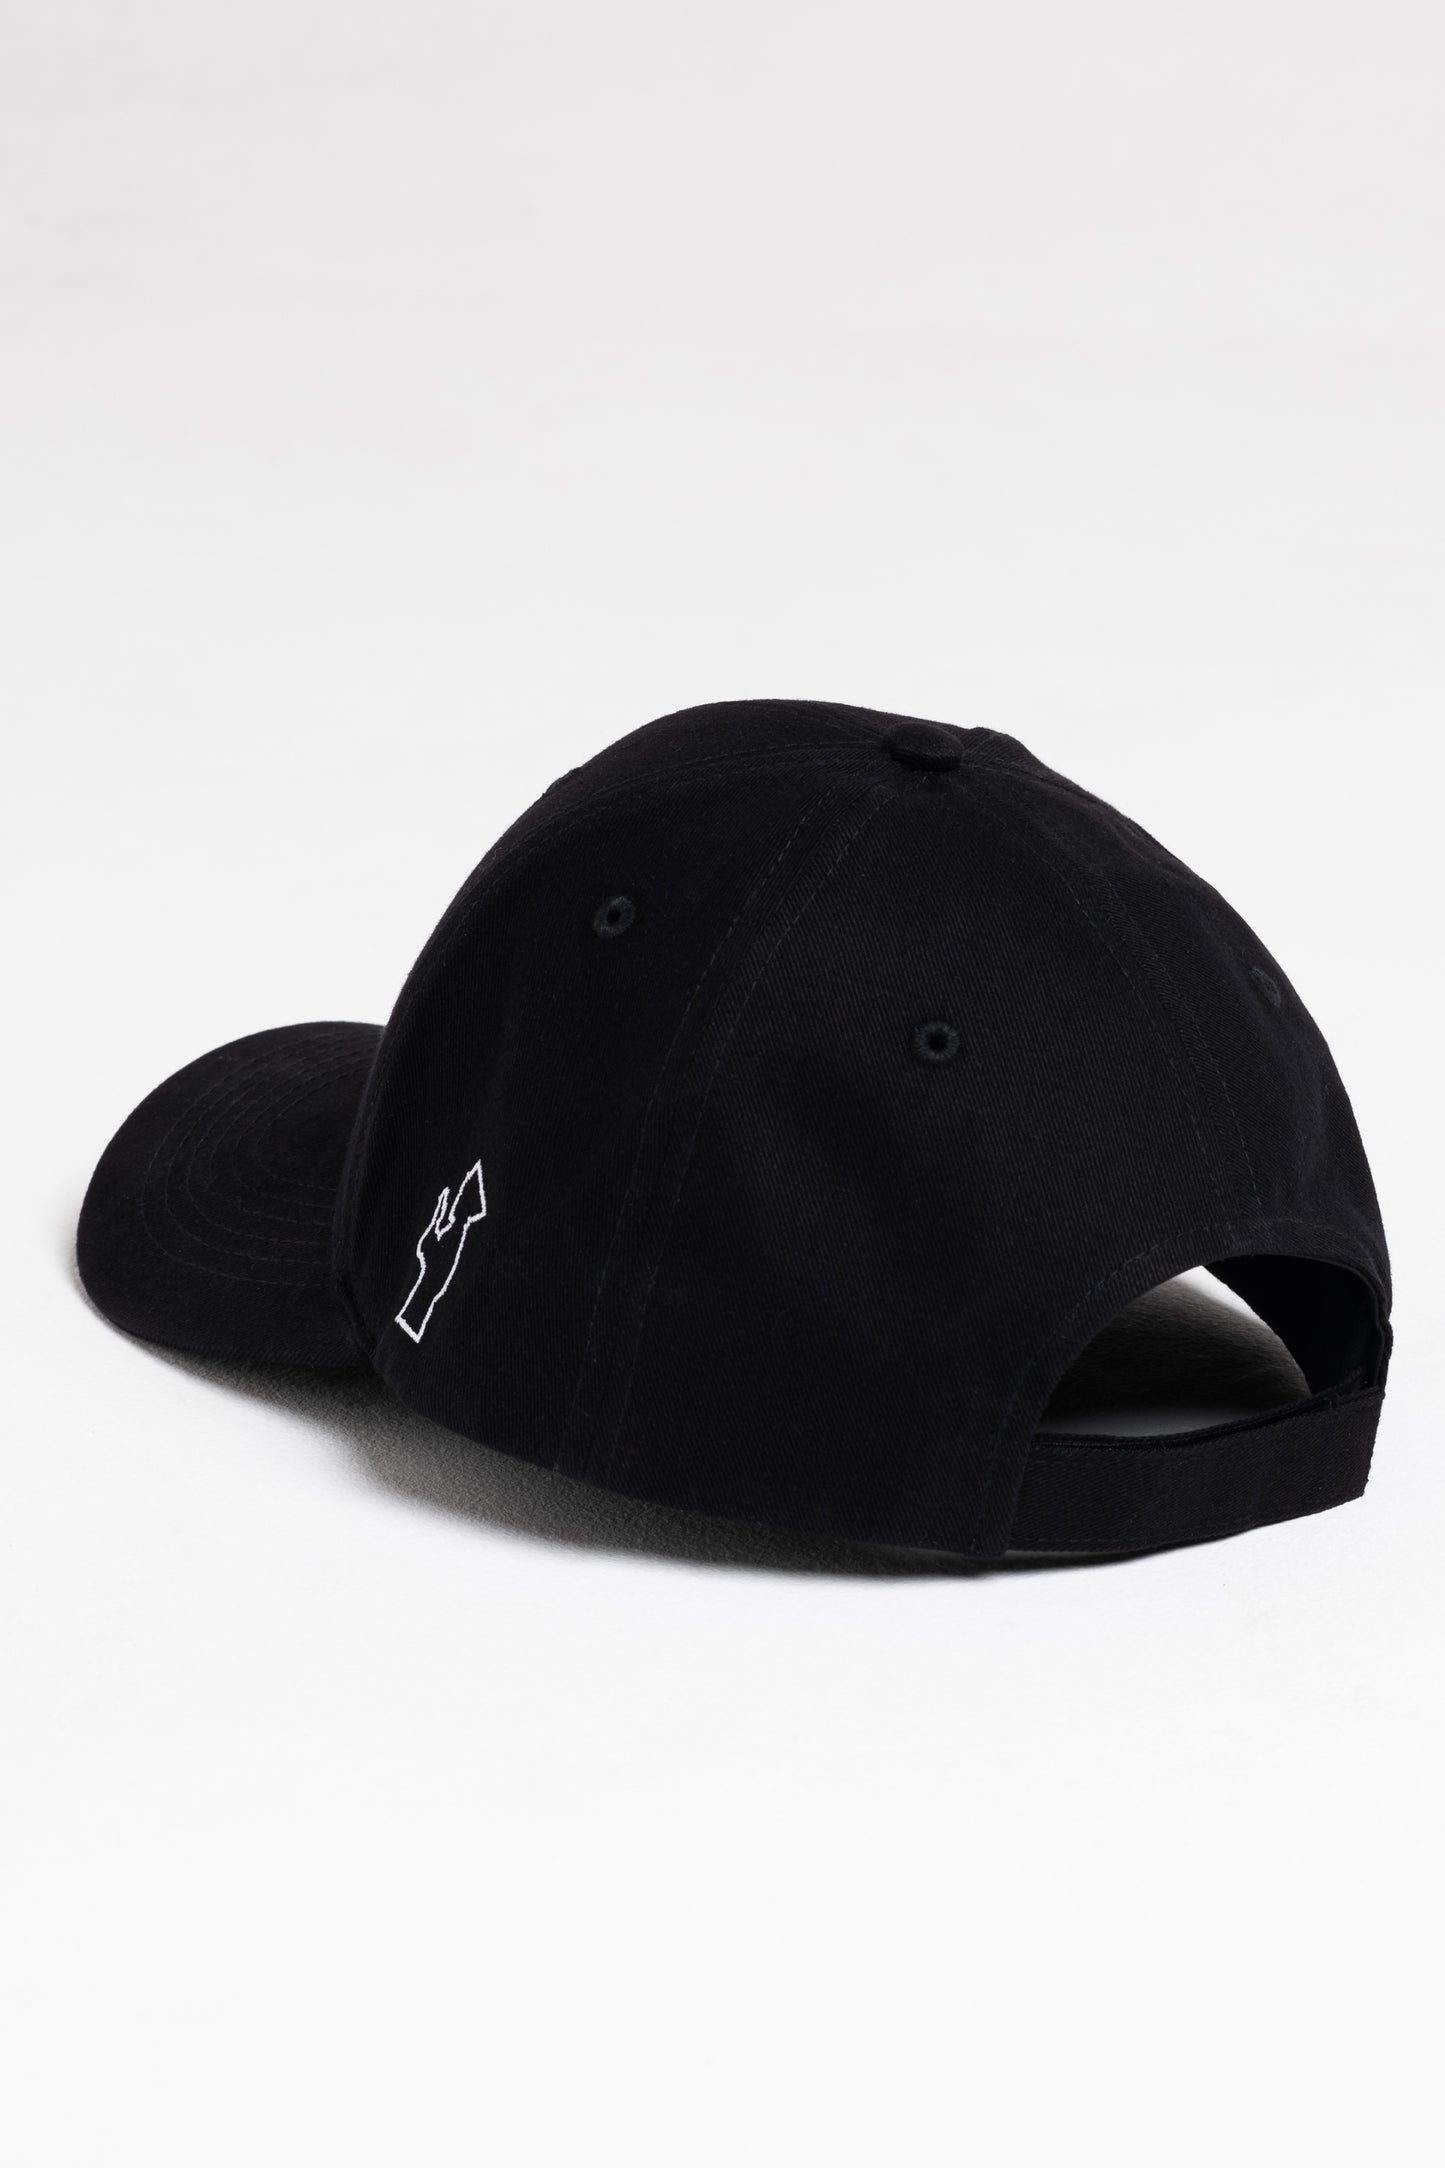 Lørd black cap